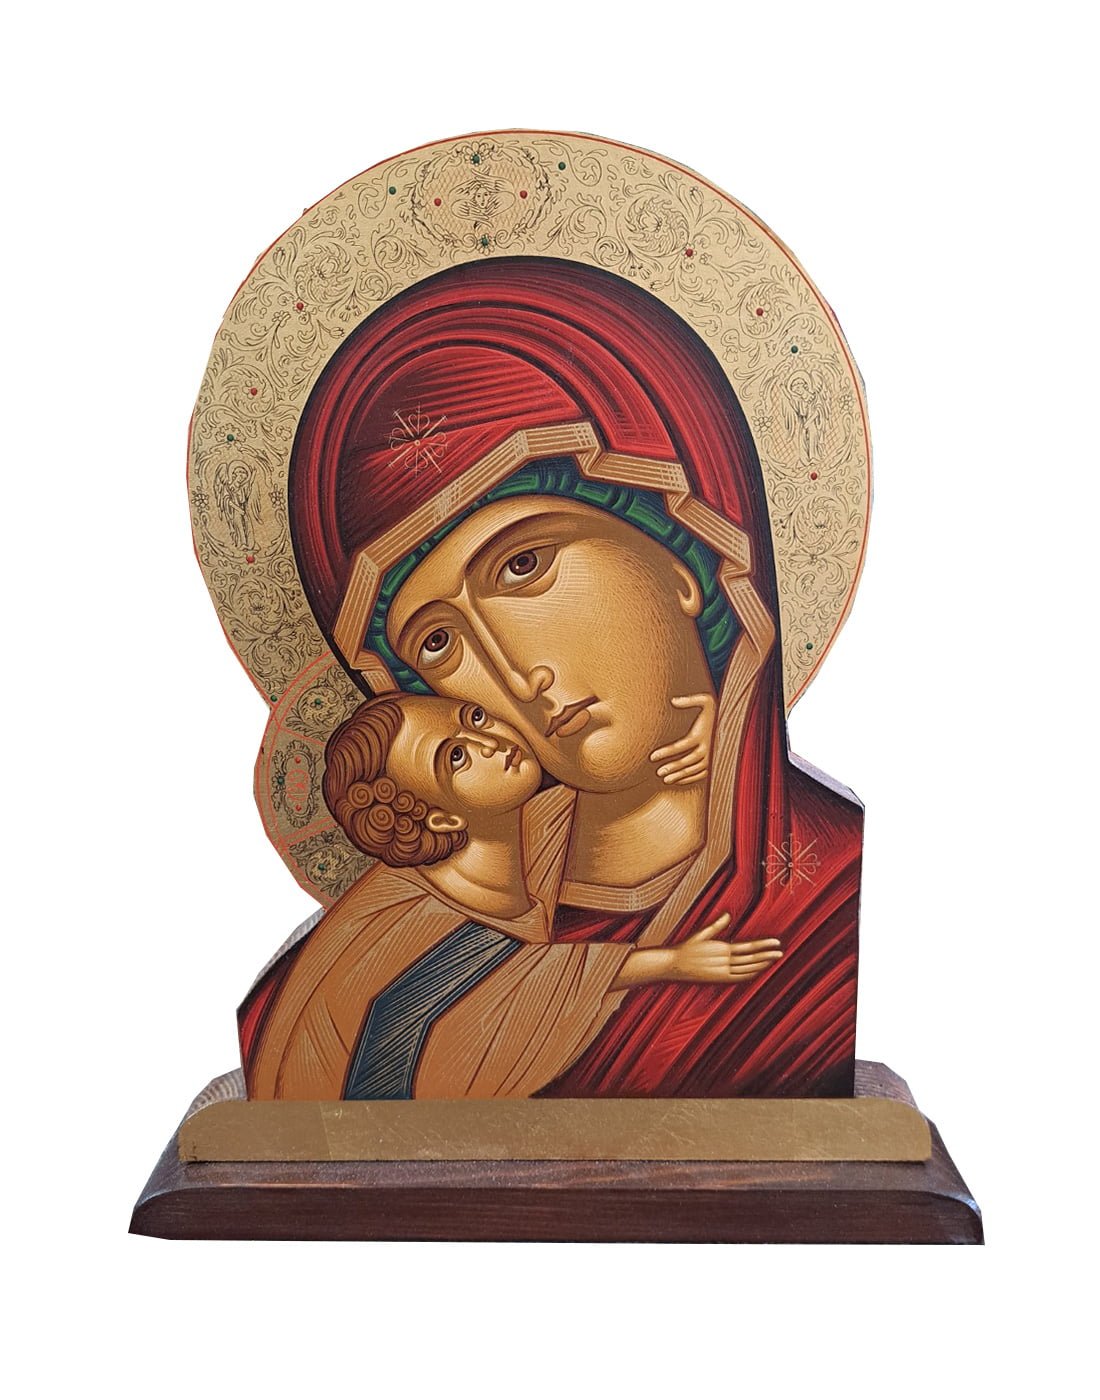 Χειροποίητο Ξυλόγλυπτο Παναγία της Πάτμου Virgin Mary of Patmos Icon